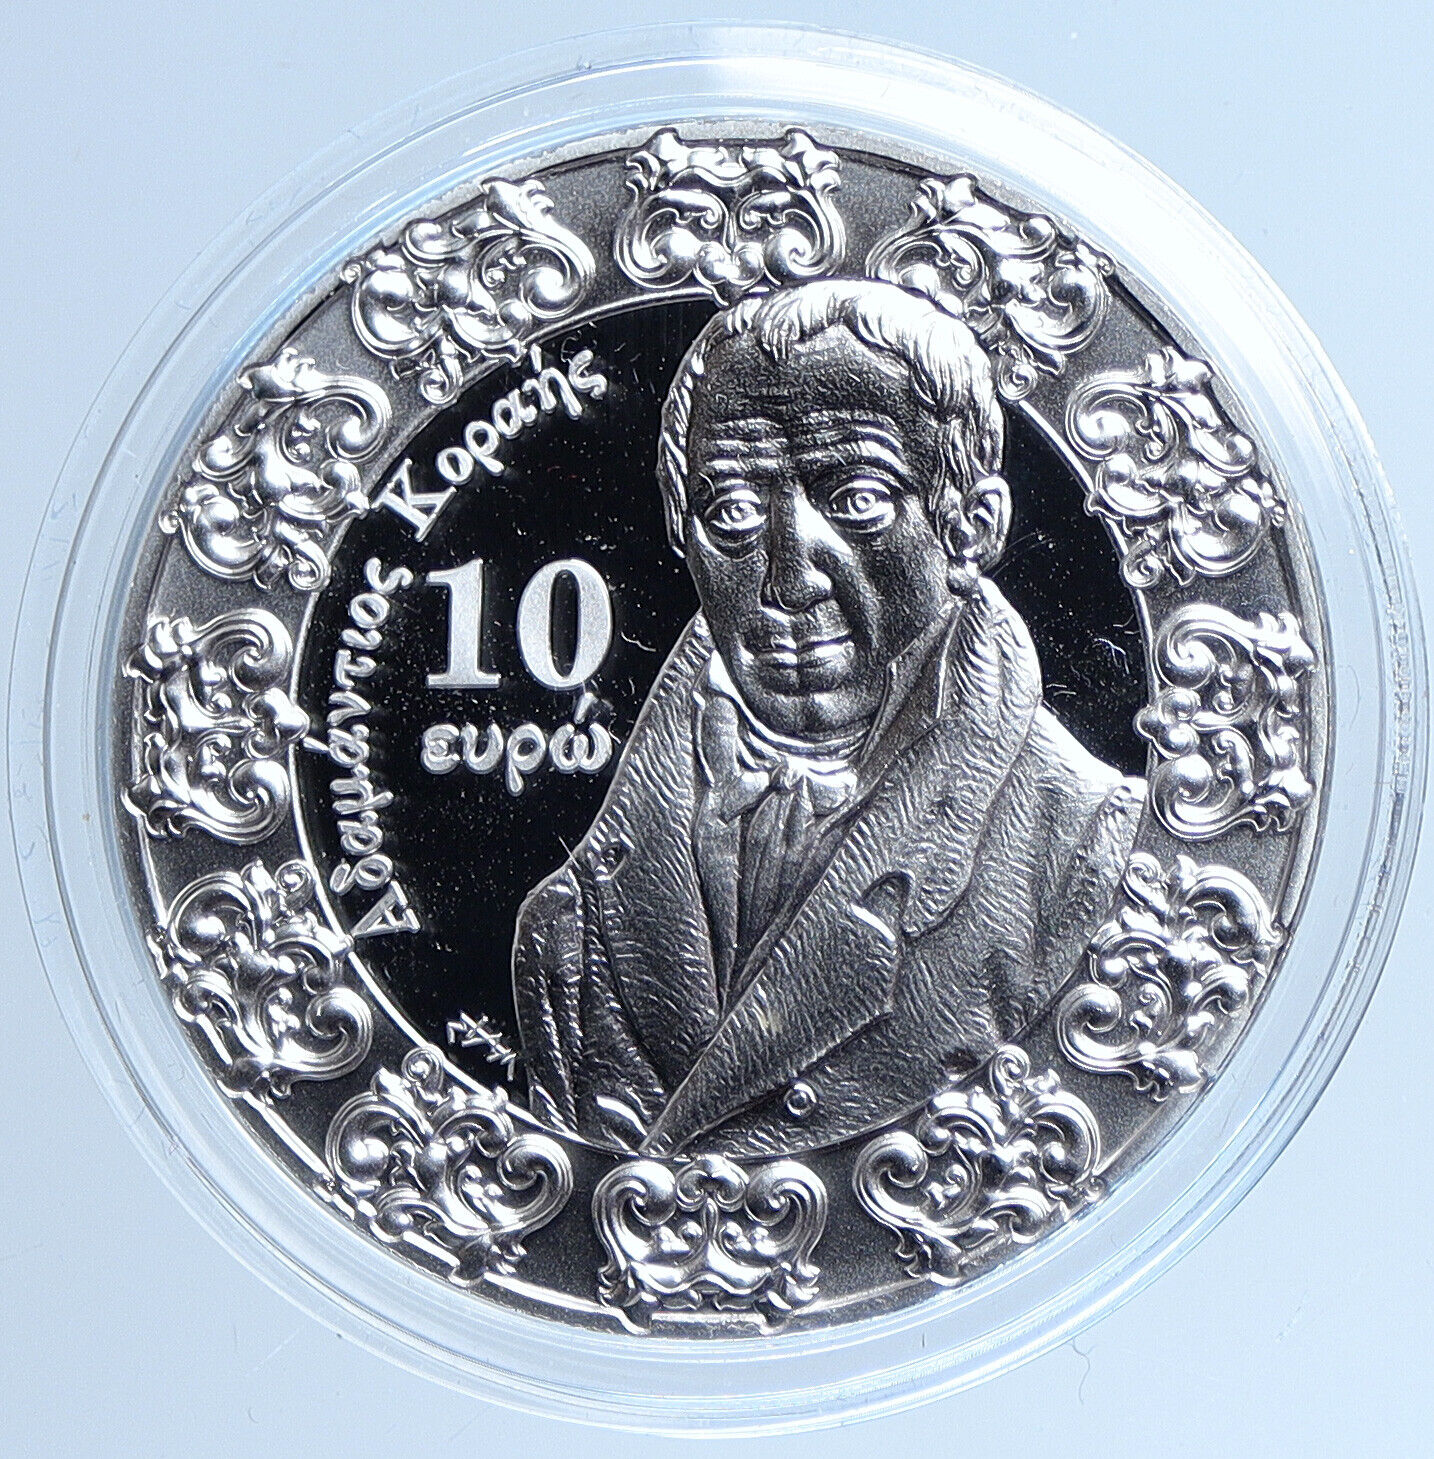 2018 GREECE Baroque & Rococo Adamantios Korais Proof Silver 10 Euro Coin i113528